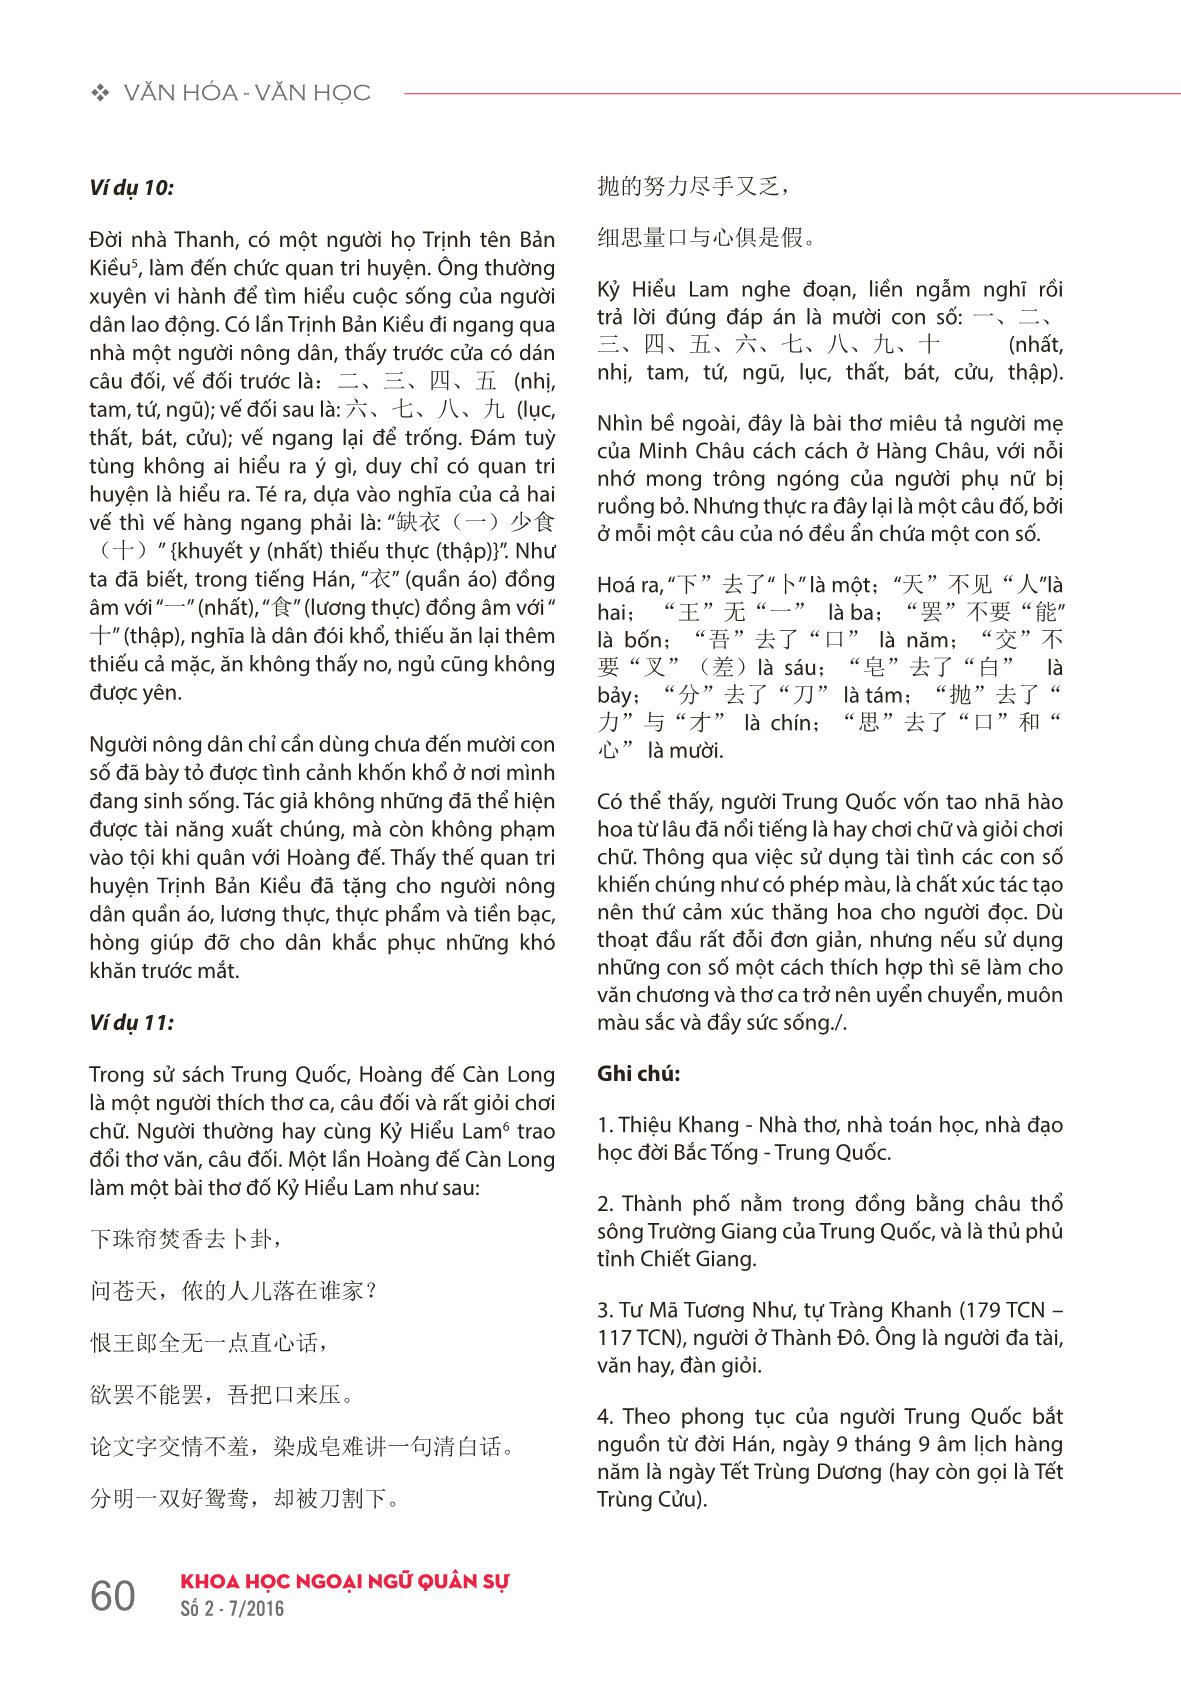 Đôi nét về văn hoá con số trong văn học Trung Quốc trang 5